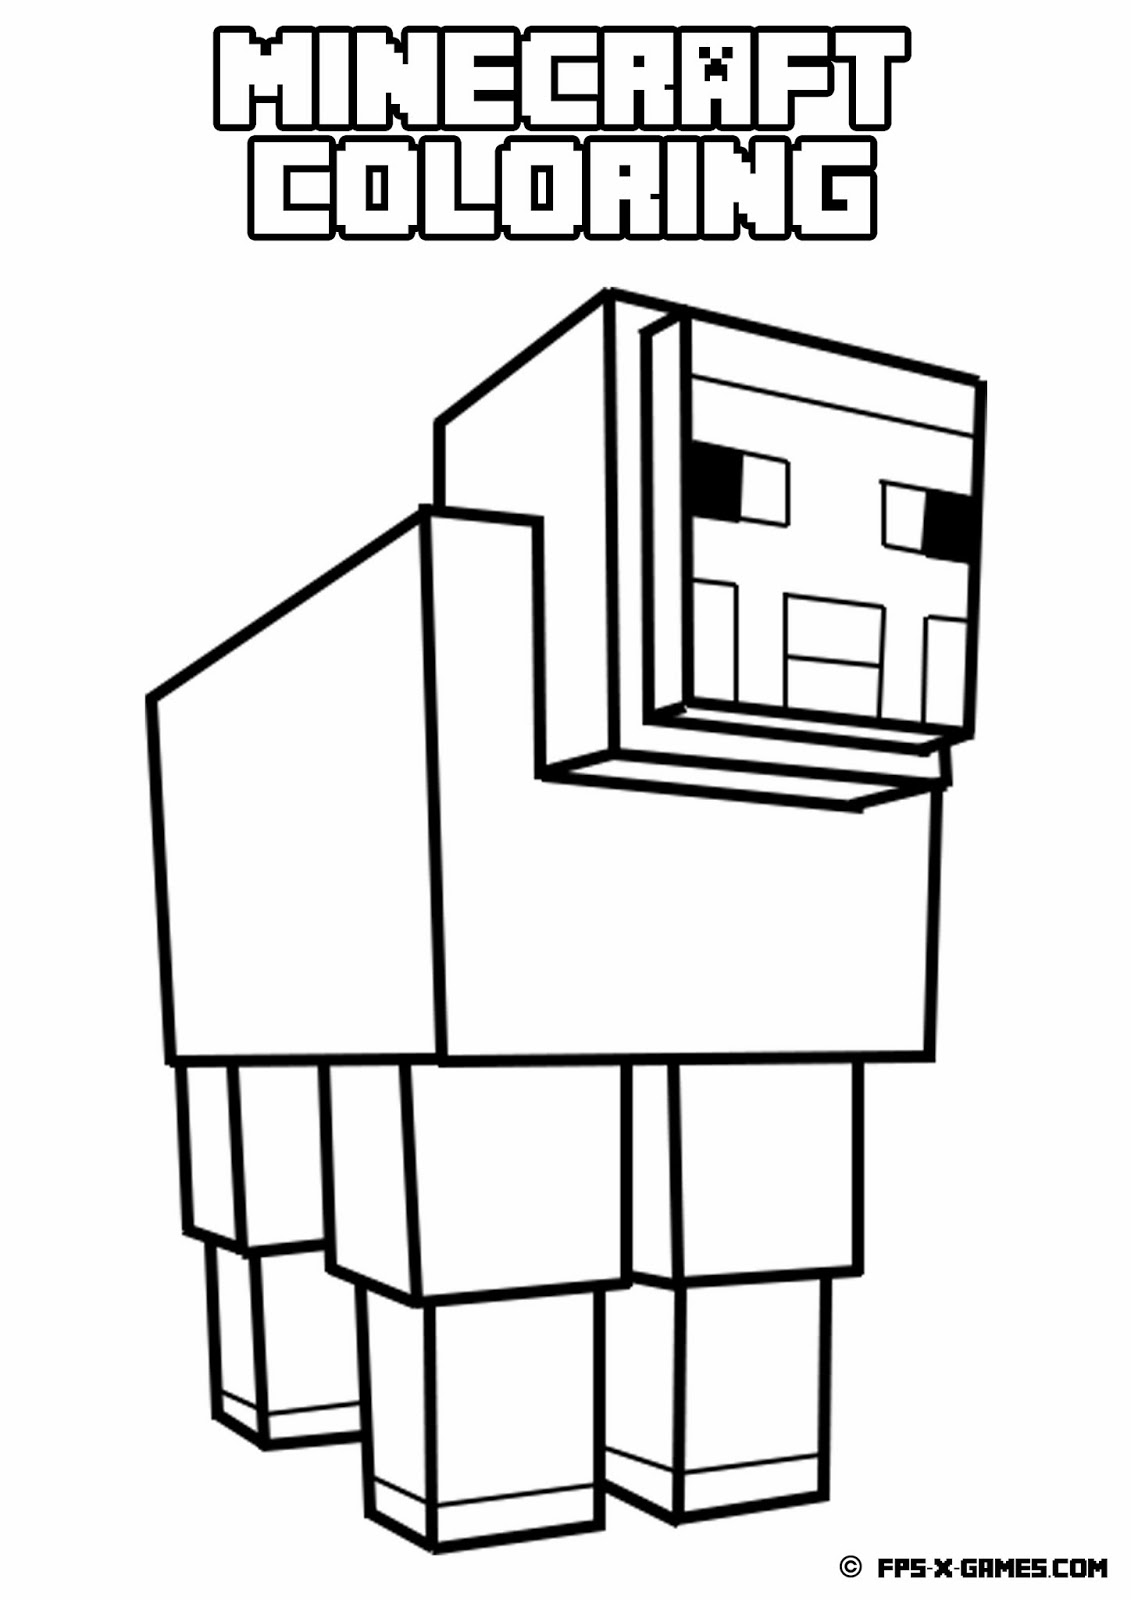 Dibujo de Minecraft para colorear, fácil para los niños